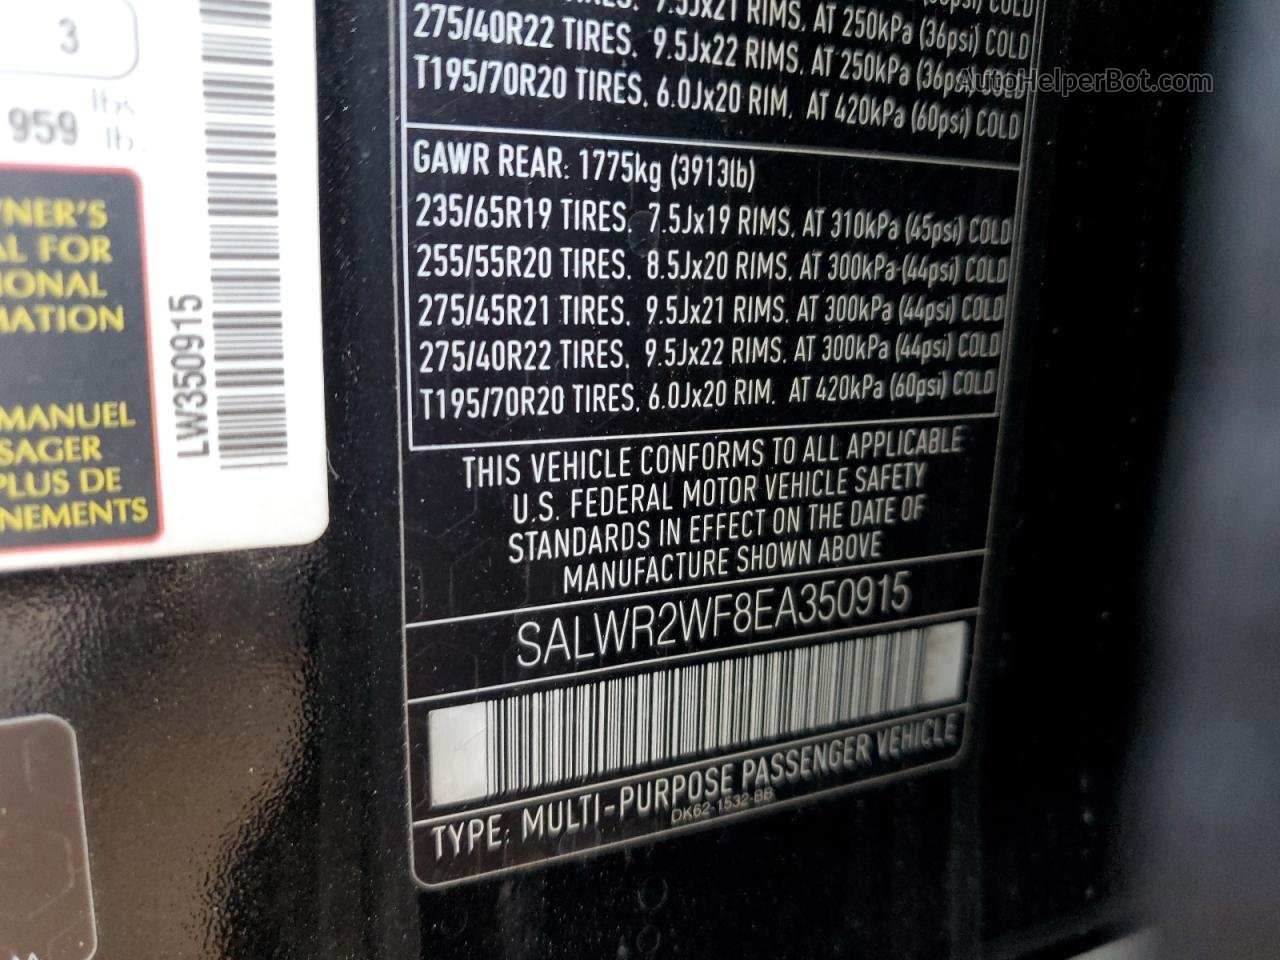 2014 Land Rover Range Rover Sport Hse Черный vin: SALWR2WF8EA350915